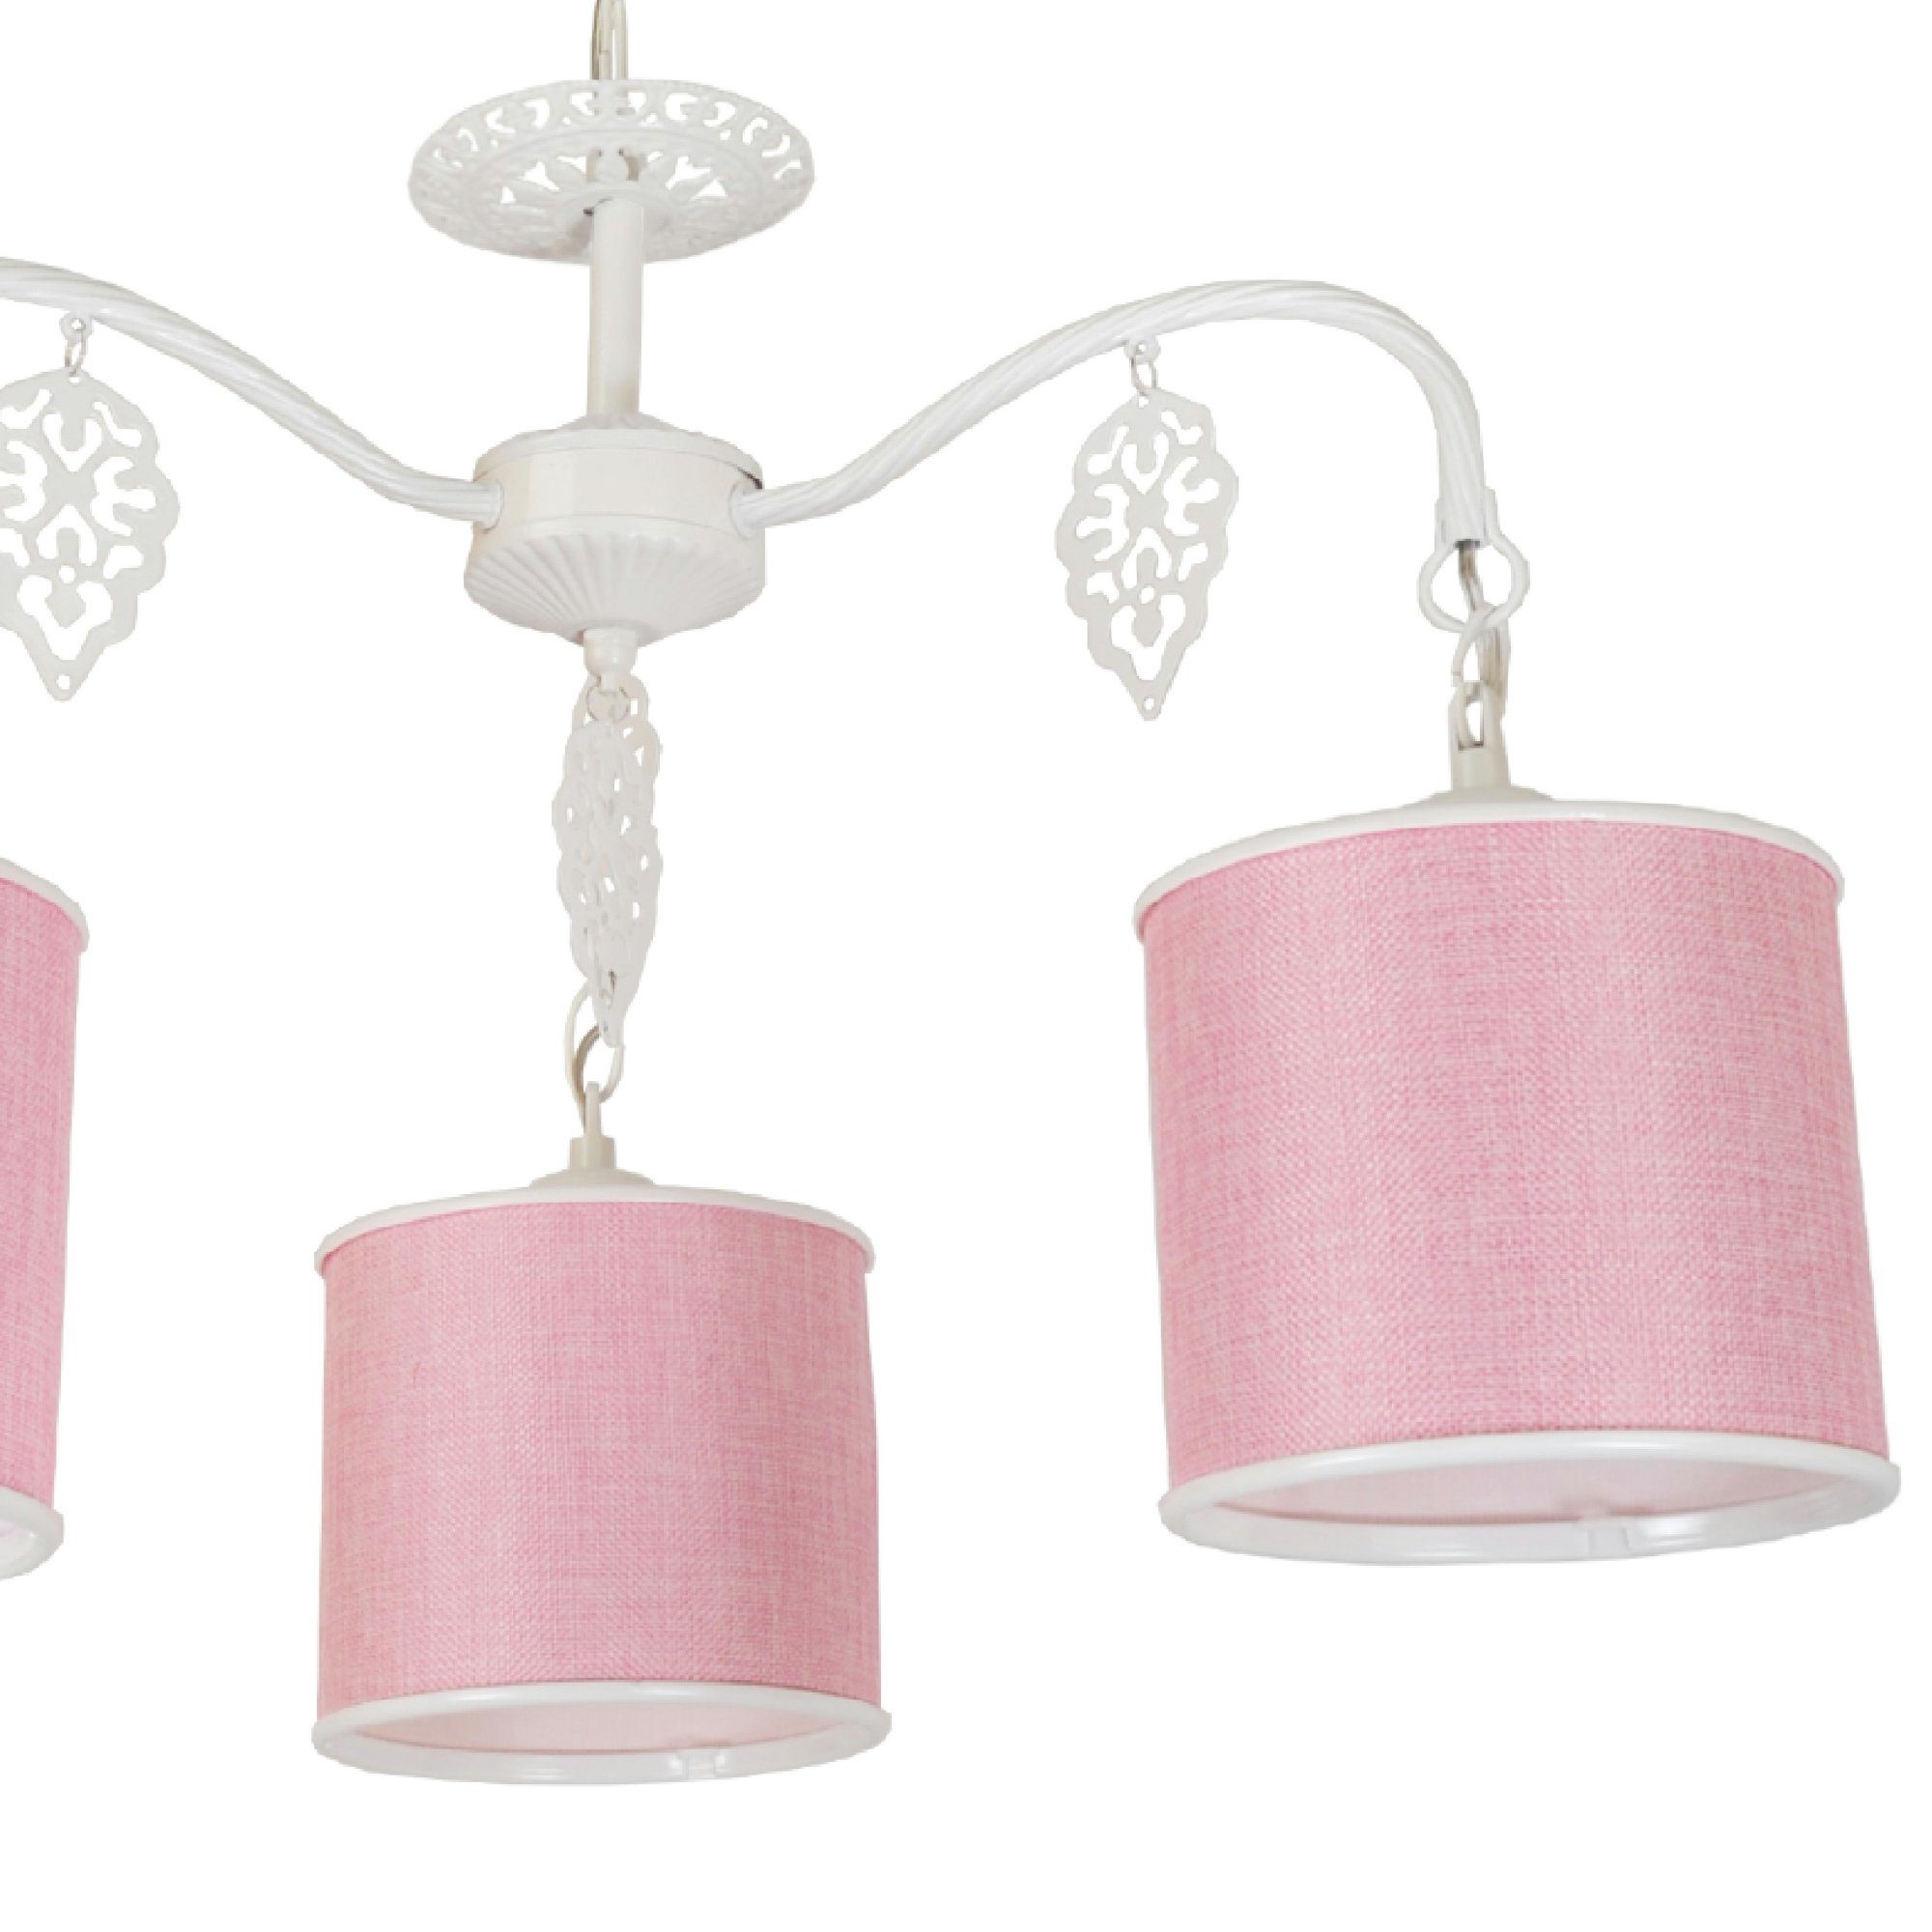 Textil Lampenschirm aus lux.pro »Rasen« Rosa Hängeleuchten, 3-flammig